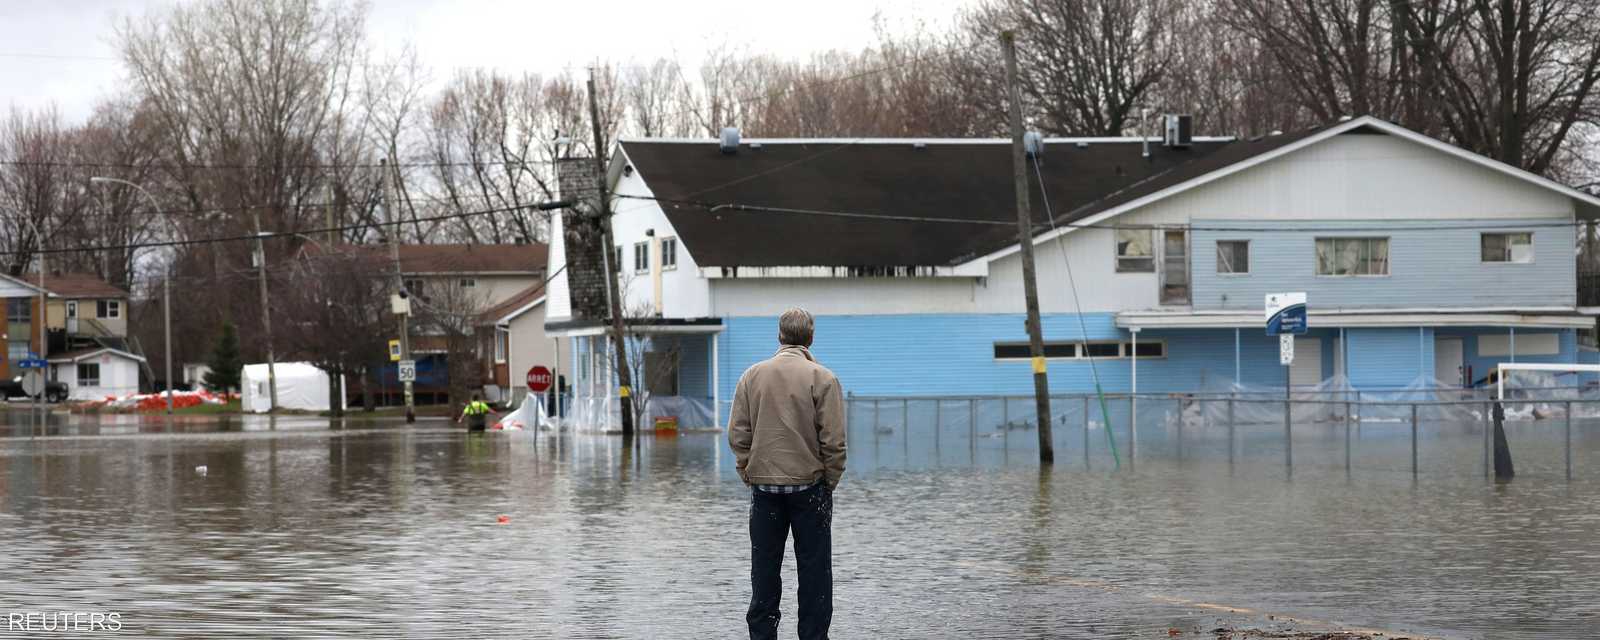 أعلنت أوتاوا الكندية حالة الطوارئ بشكل احترازي، خوفا من وصول الفيضانات إلى بعض منازل المدينة، خاصة مع توقع تساقط أمطار غزيرة.